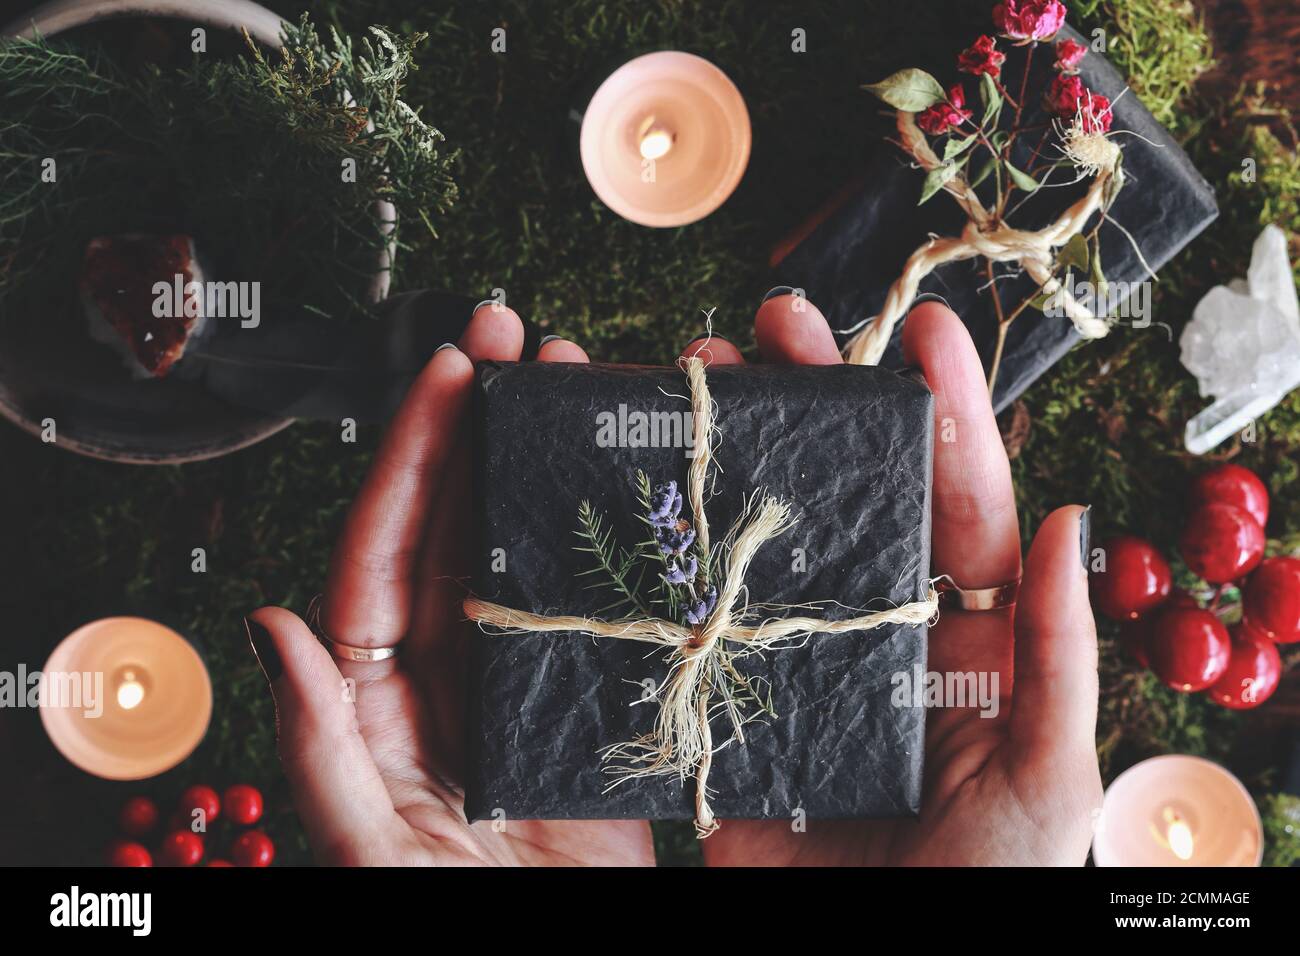 Solsticio de invierno Yule (Navidad) tema plano de las manos de la mujer con una caja de regalo negra envuelta en hilados y flores en sus manos Foto de stock